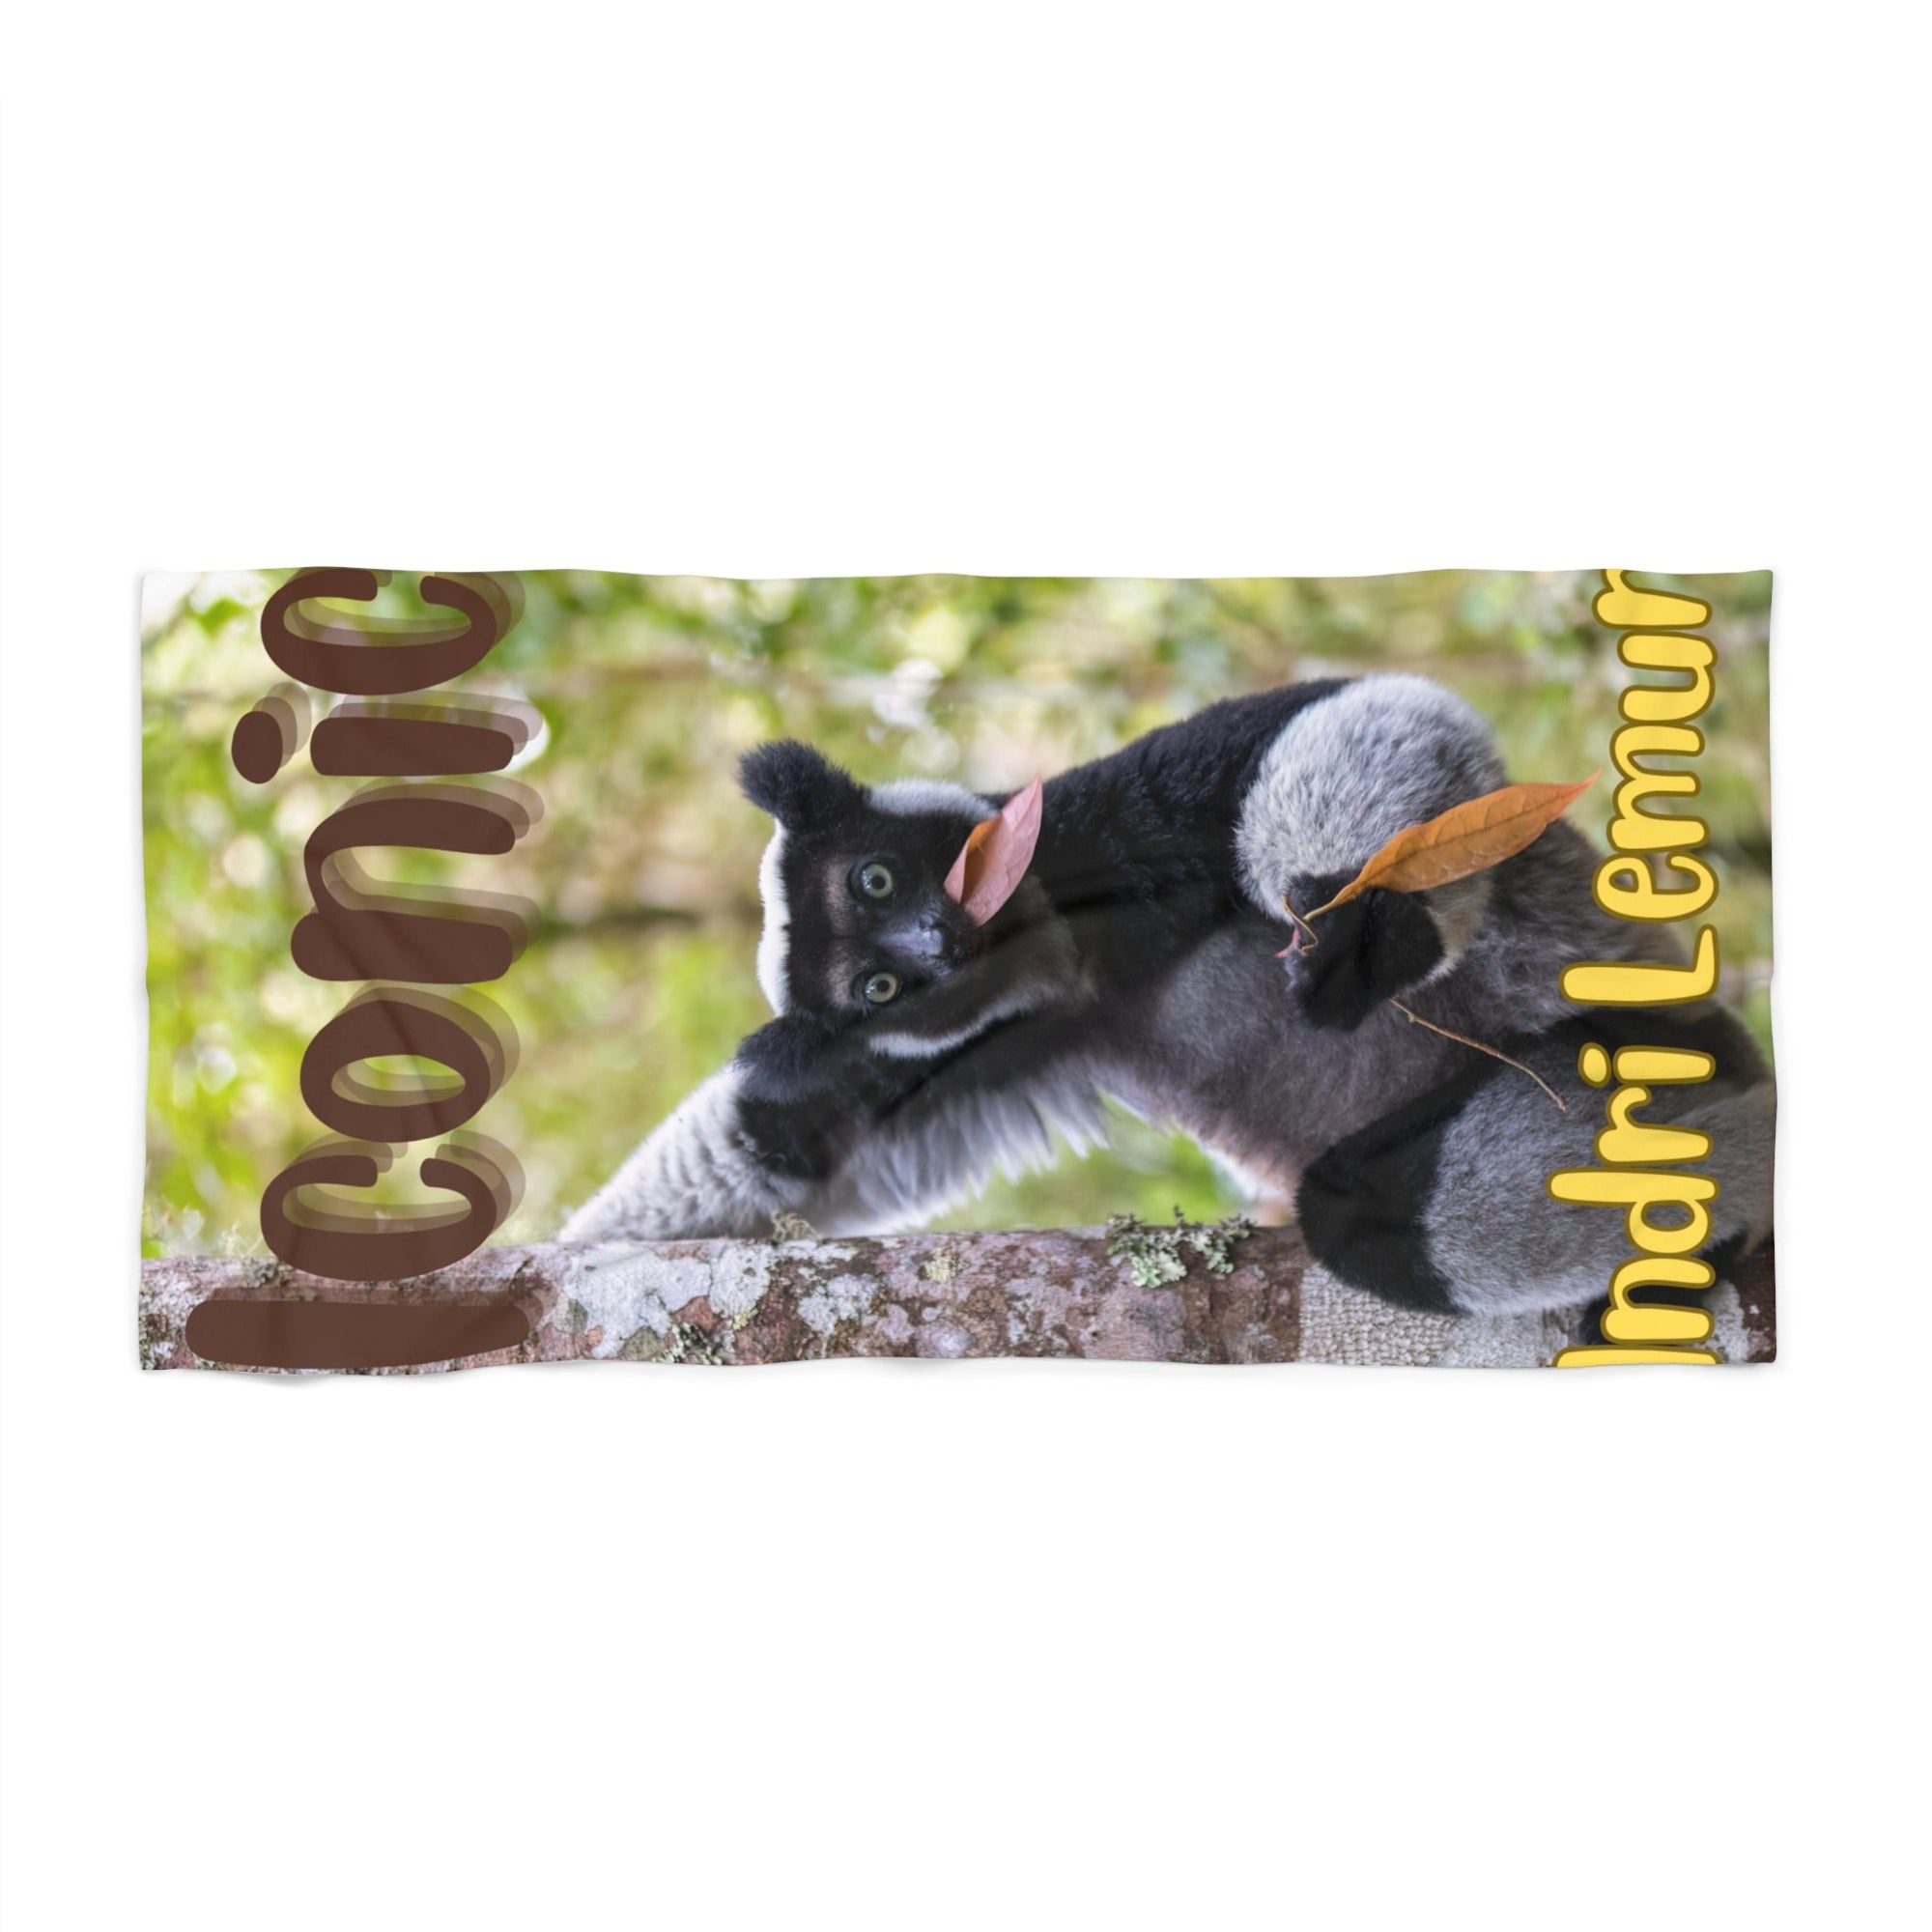 Iconic Indri Lemur Beach Towel - Primation